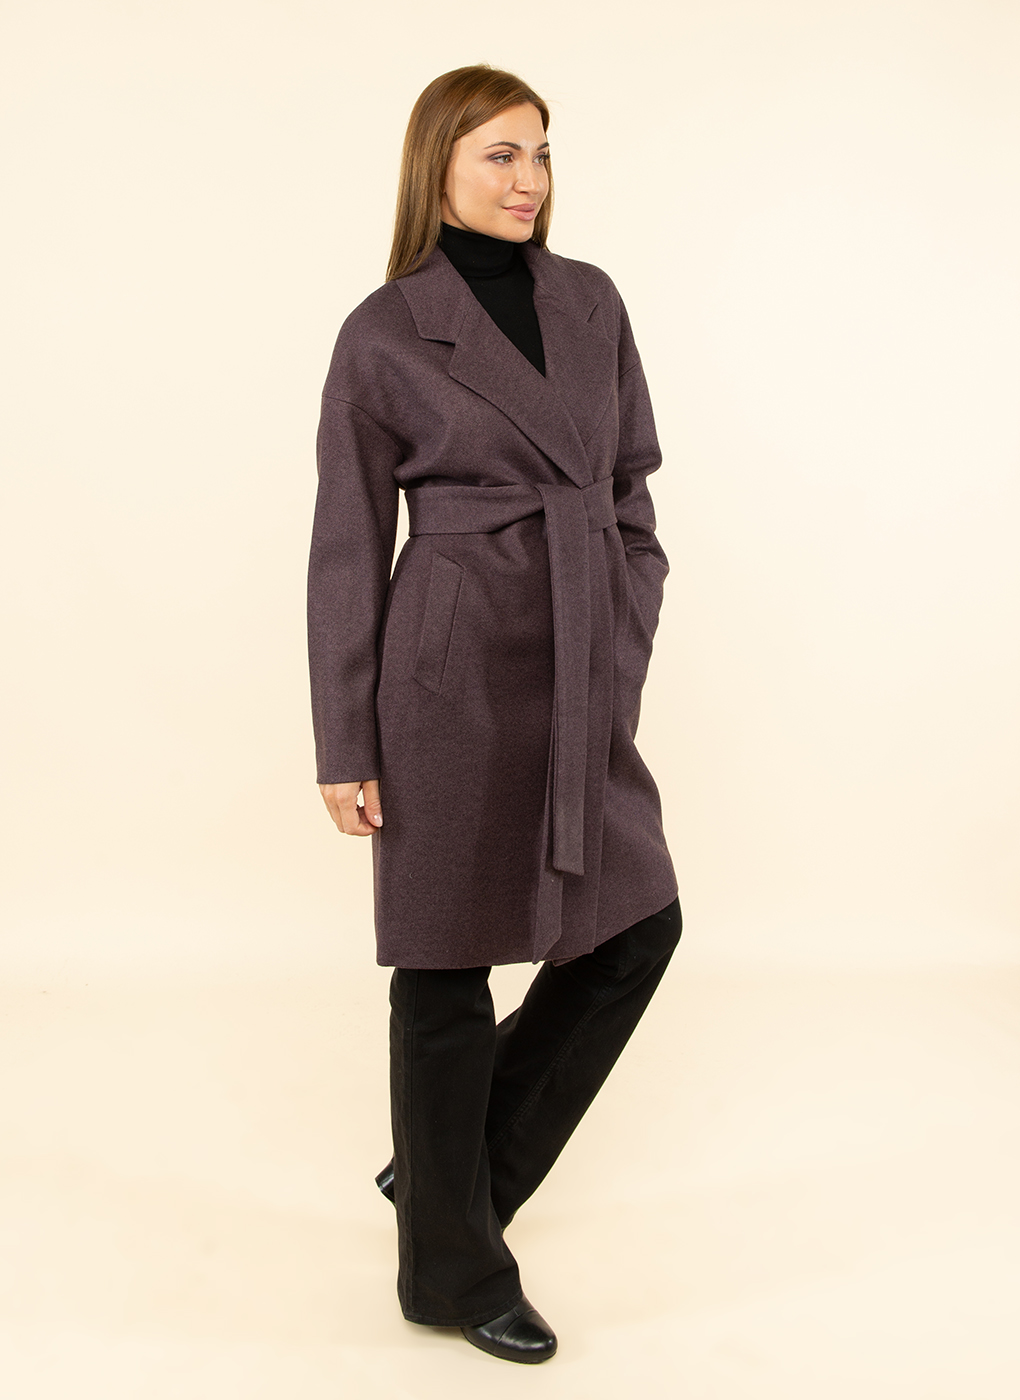 Пальто женское Каляев 52545 коричневое 48 RU